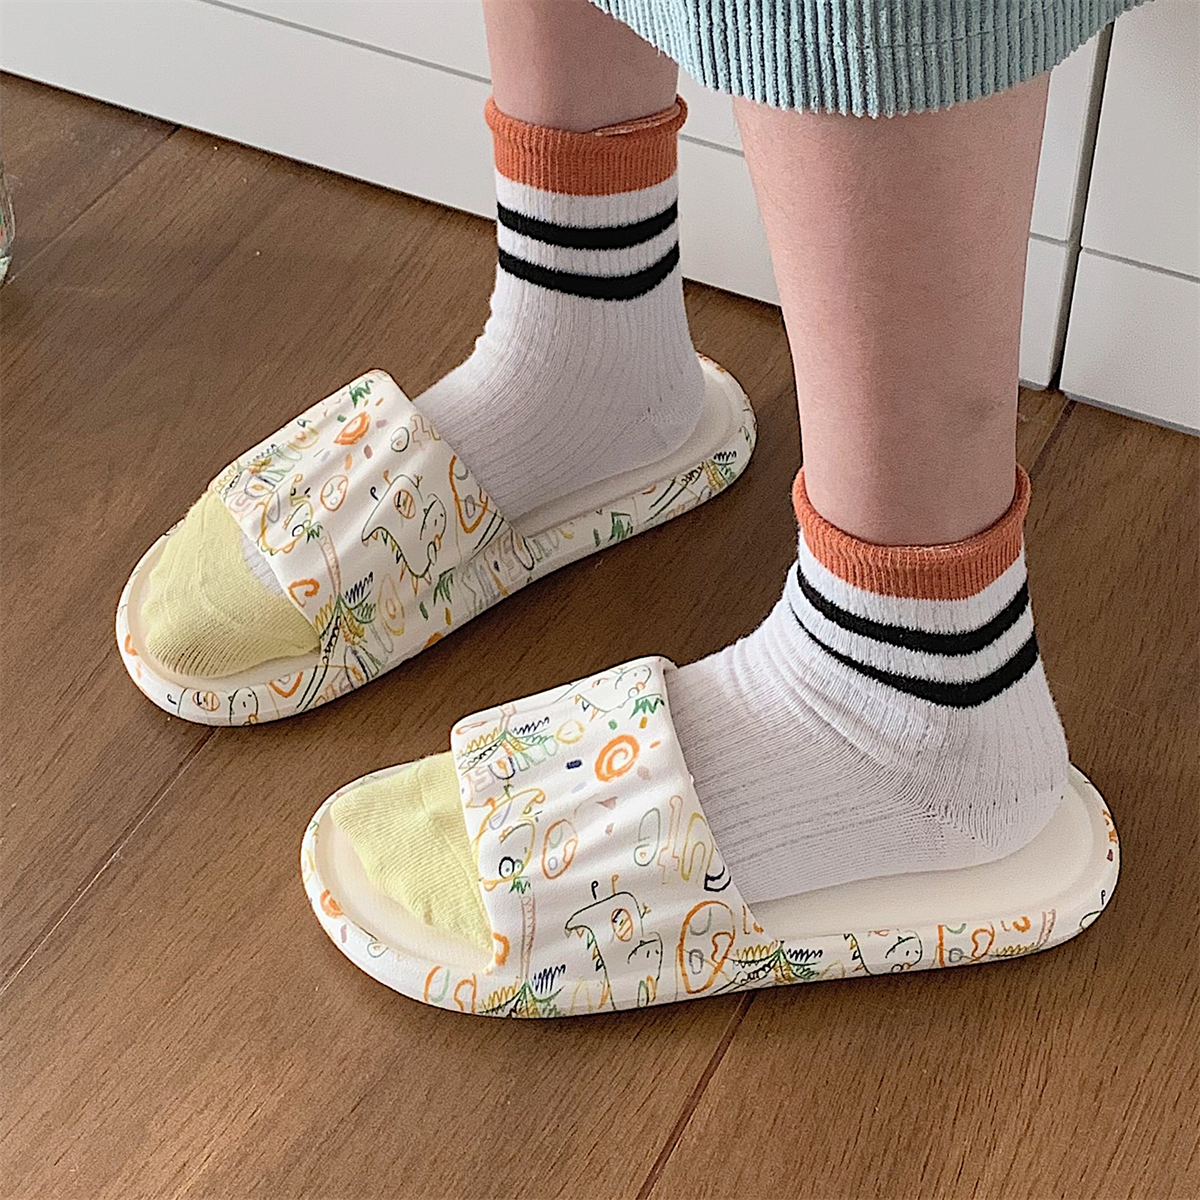 学生居家防滑防臭eva浴室拖鞋夏季新款韩版可爱童趣涂鸦凉拖鞋女 - 图2